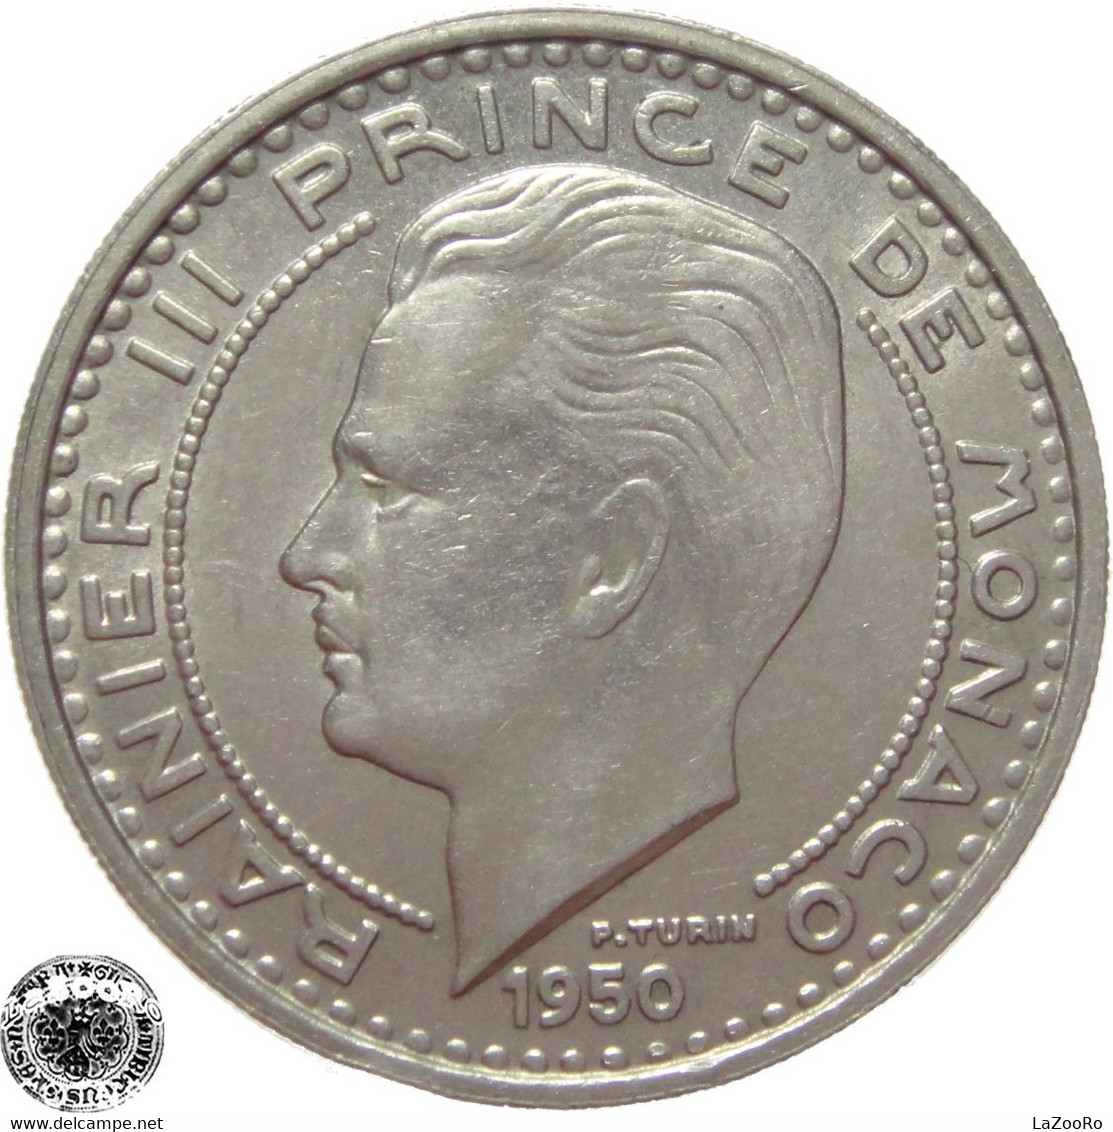 LaZooRo: Monaco 100 Francs 1950 XF / UNC - 1949-1956 Anciens Francs